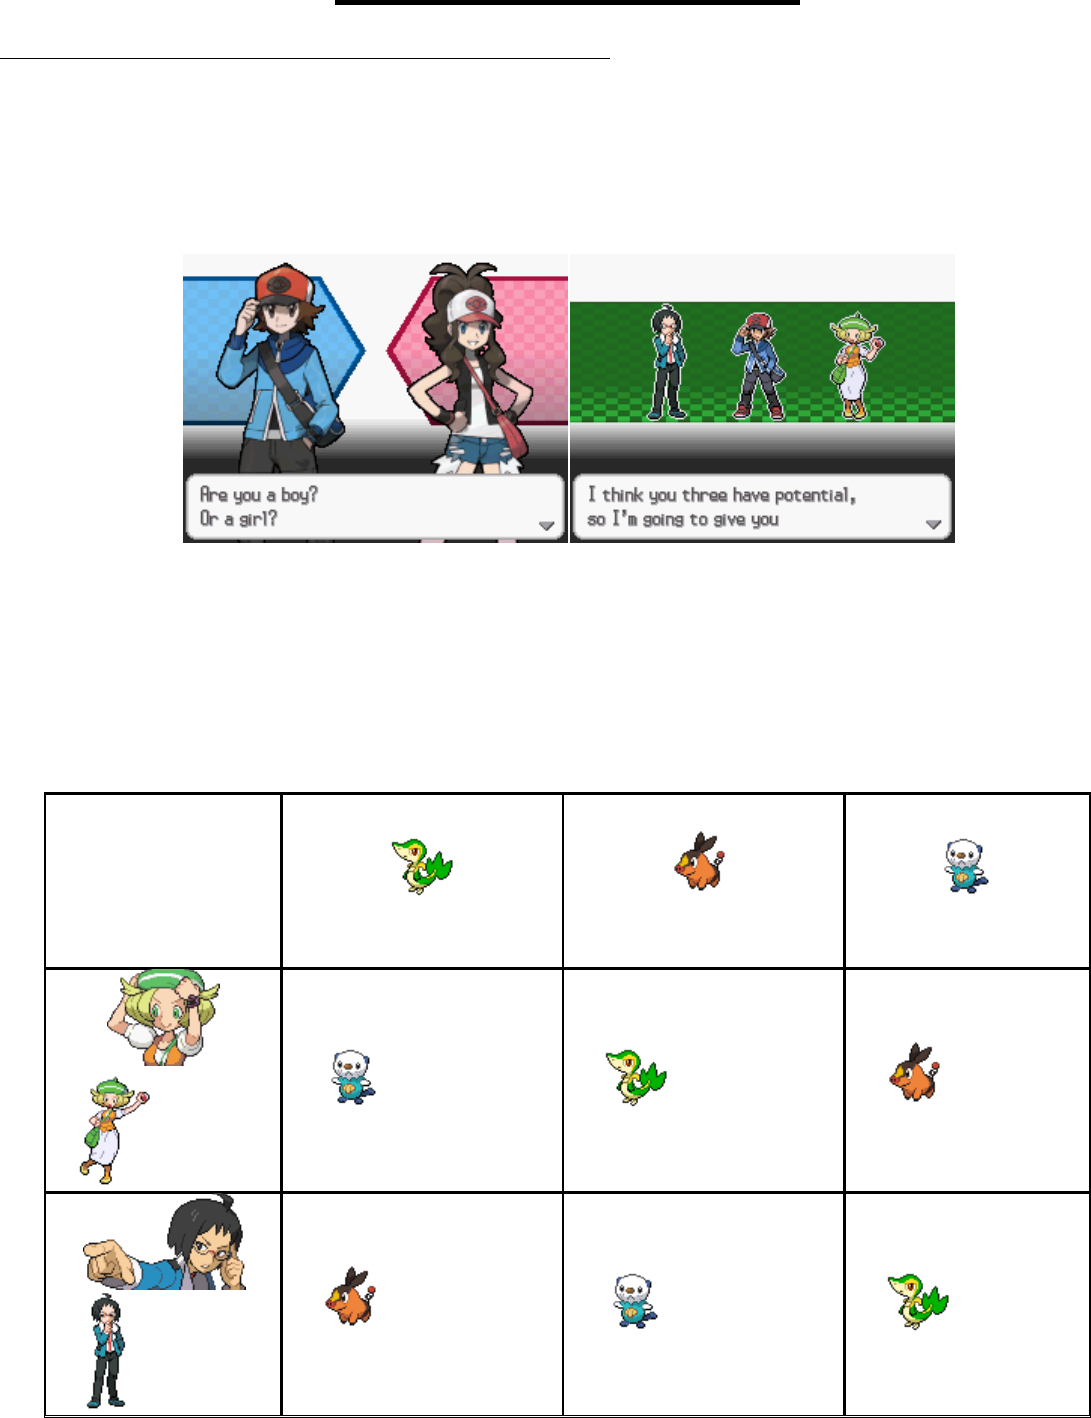 A Passagem da 4ª para a 5ª Geração – Pokémon Mythology